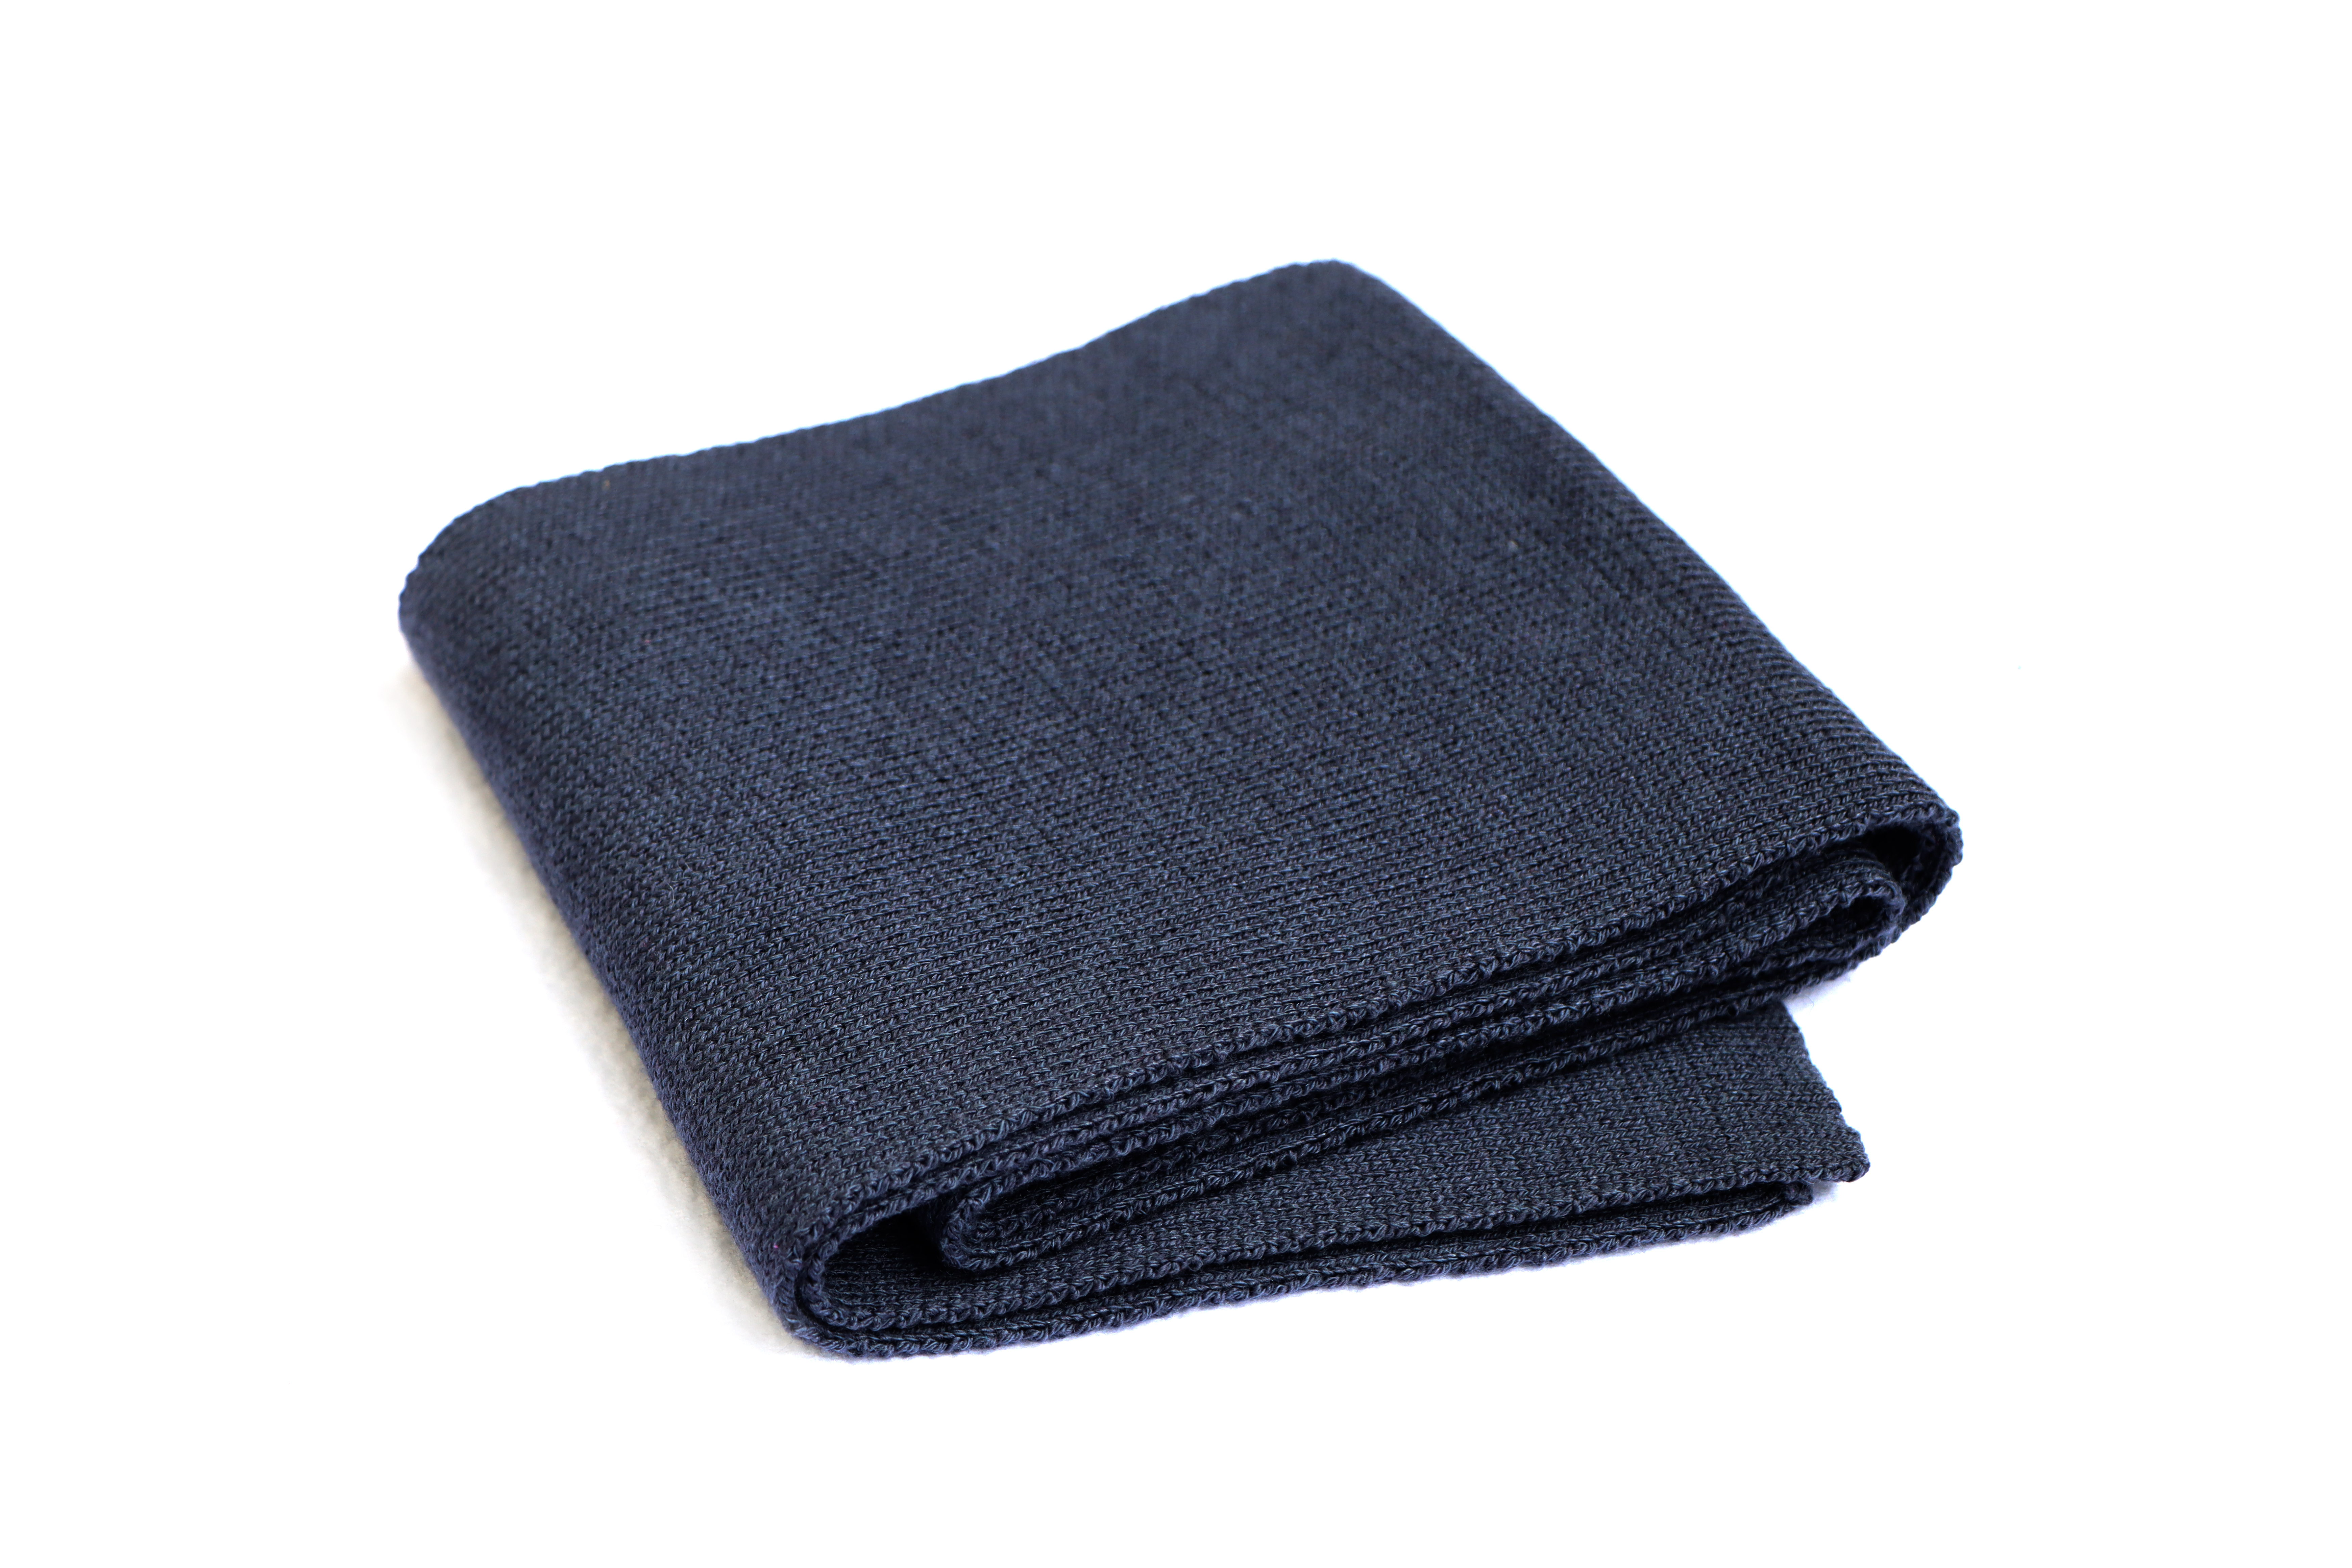 Blaugrauer Kinder-Schal mit Wolle